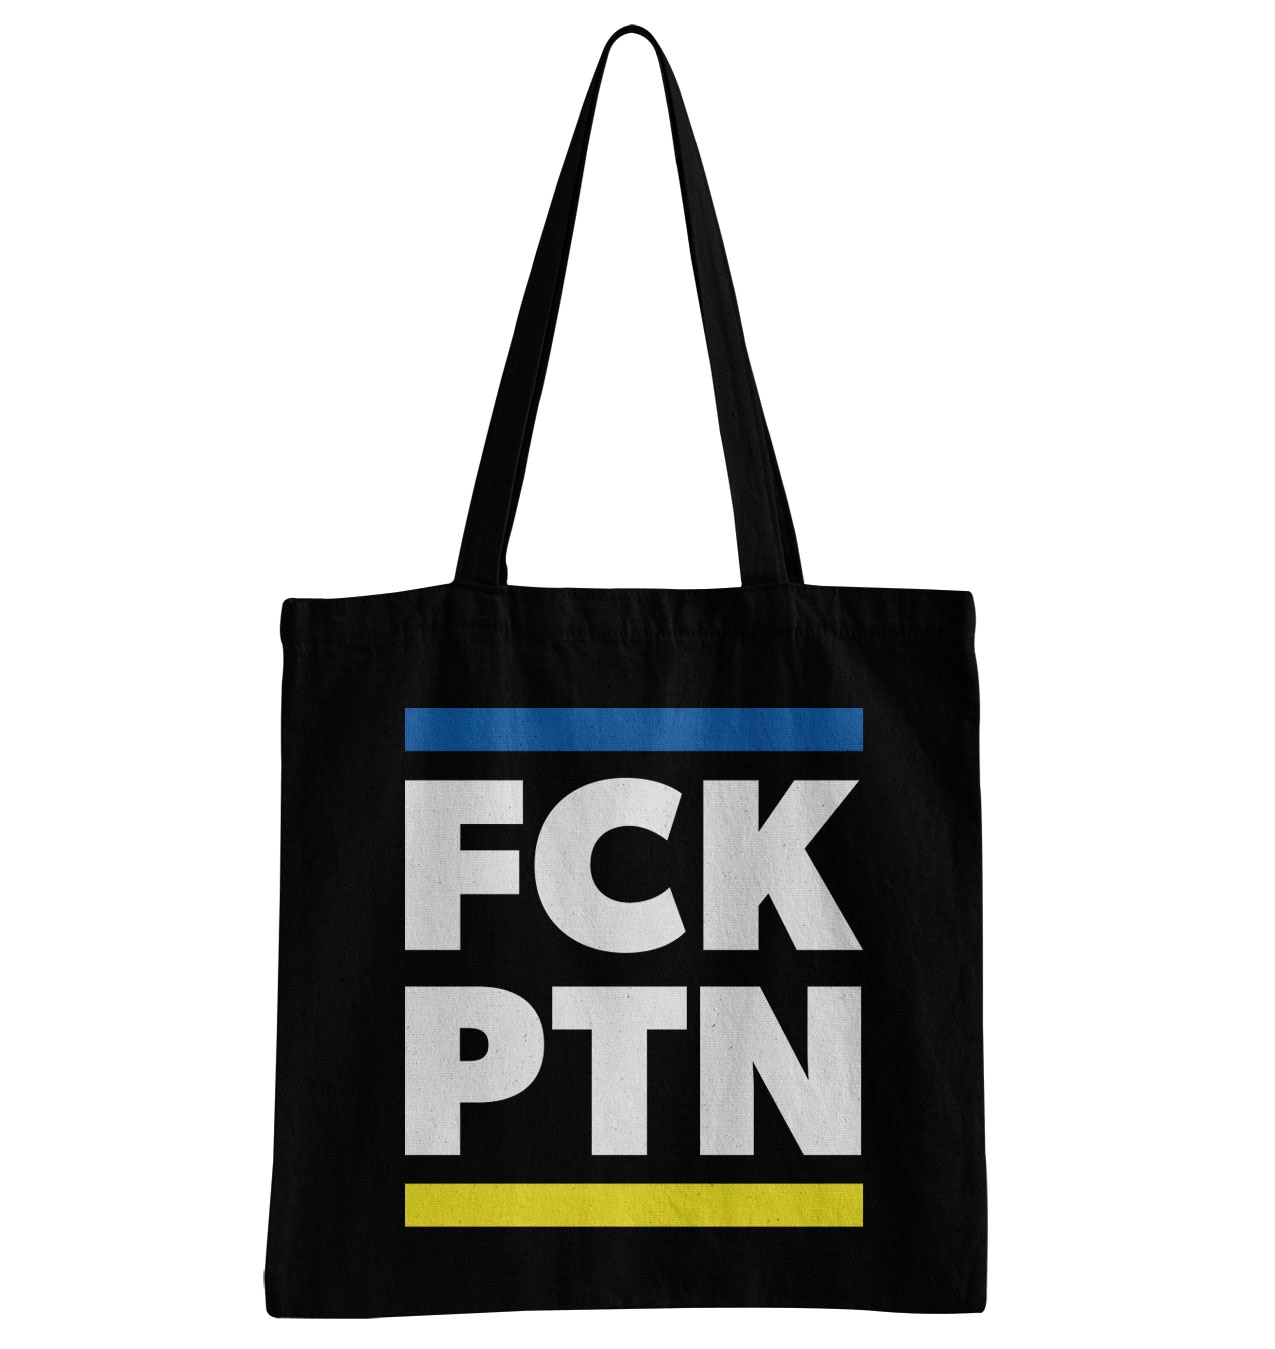 FCK PTN Tote Bag